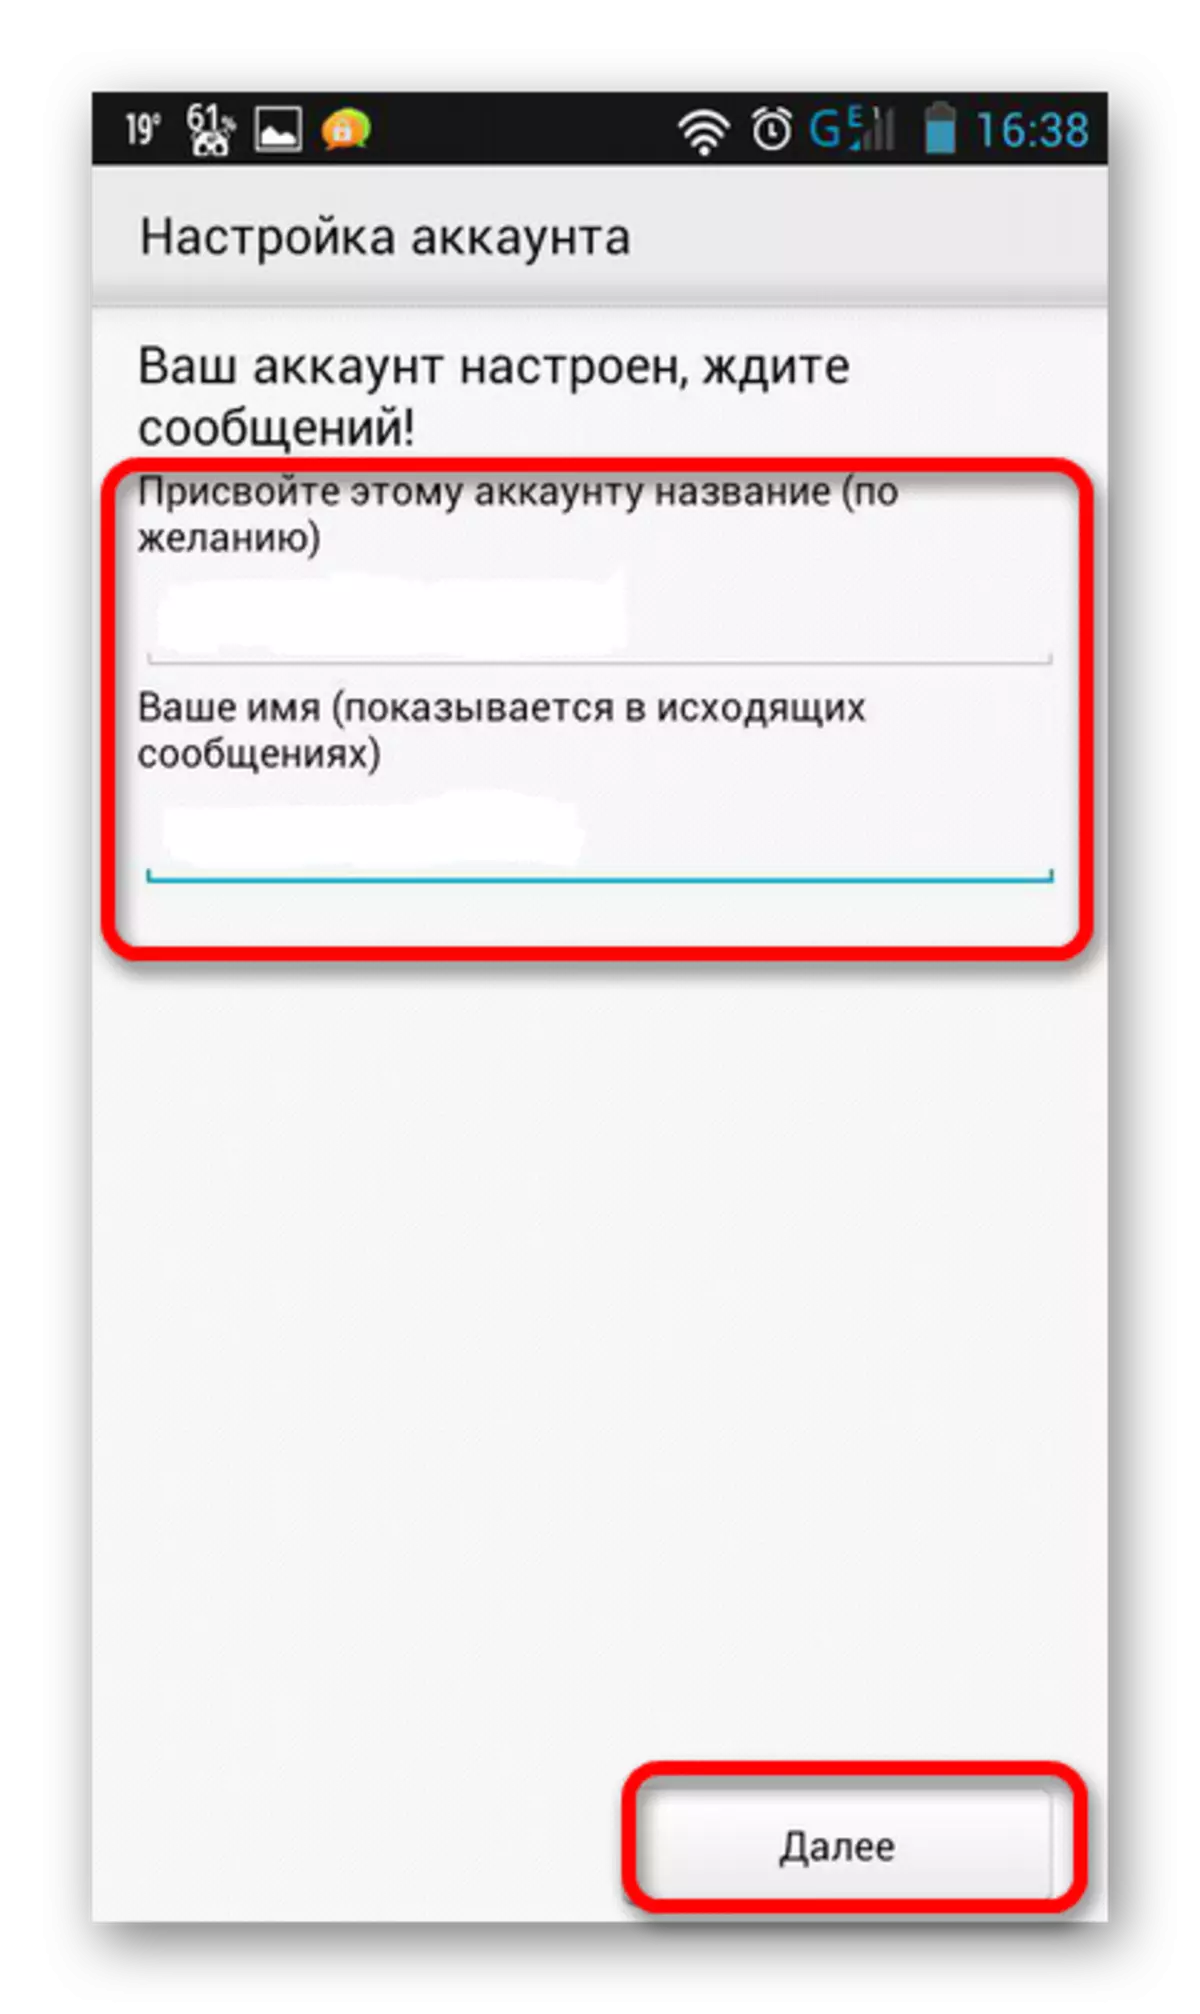 Tilin nimi ja nimi Yandex Mail